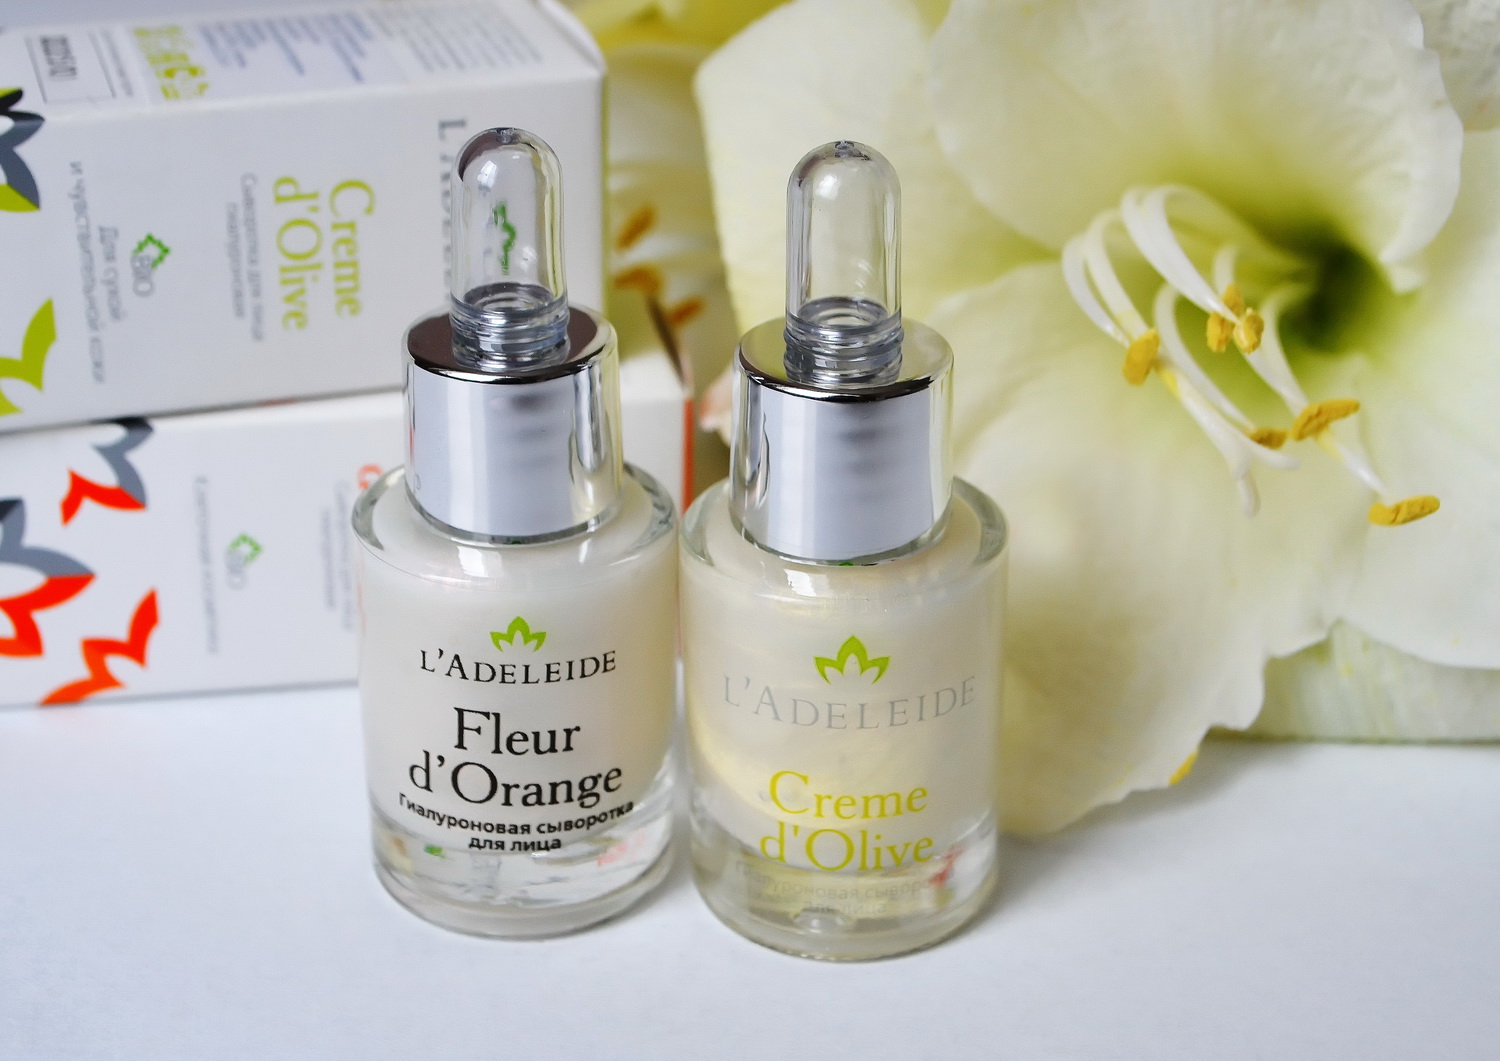 Сыворотки для лица L'Adeleide: Creme d'Olive и Fleur d'Orange